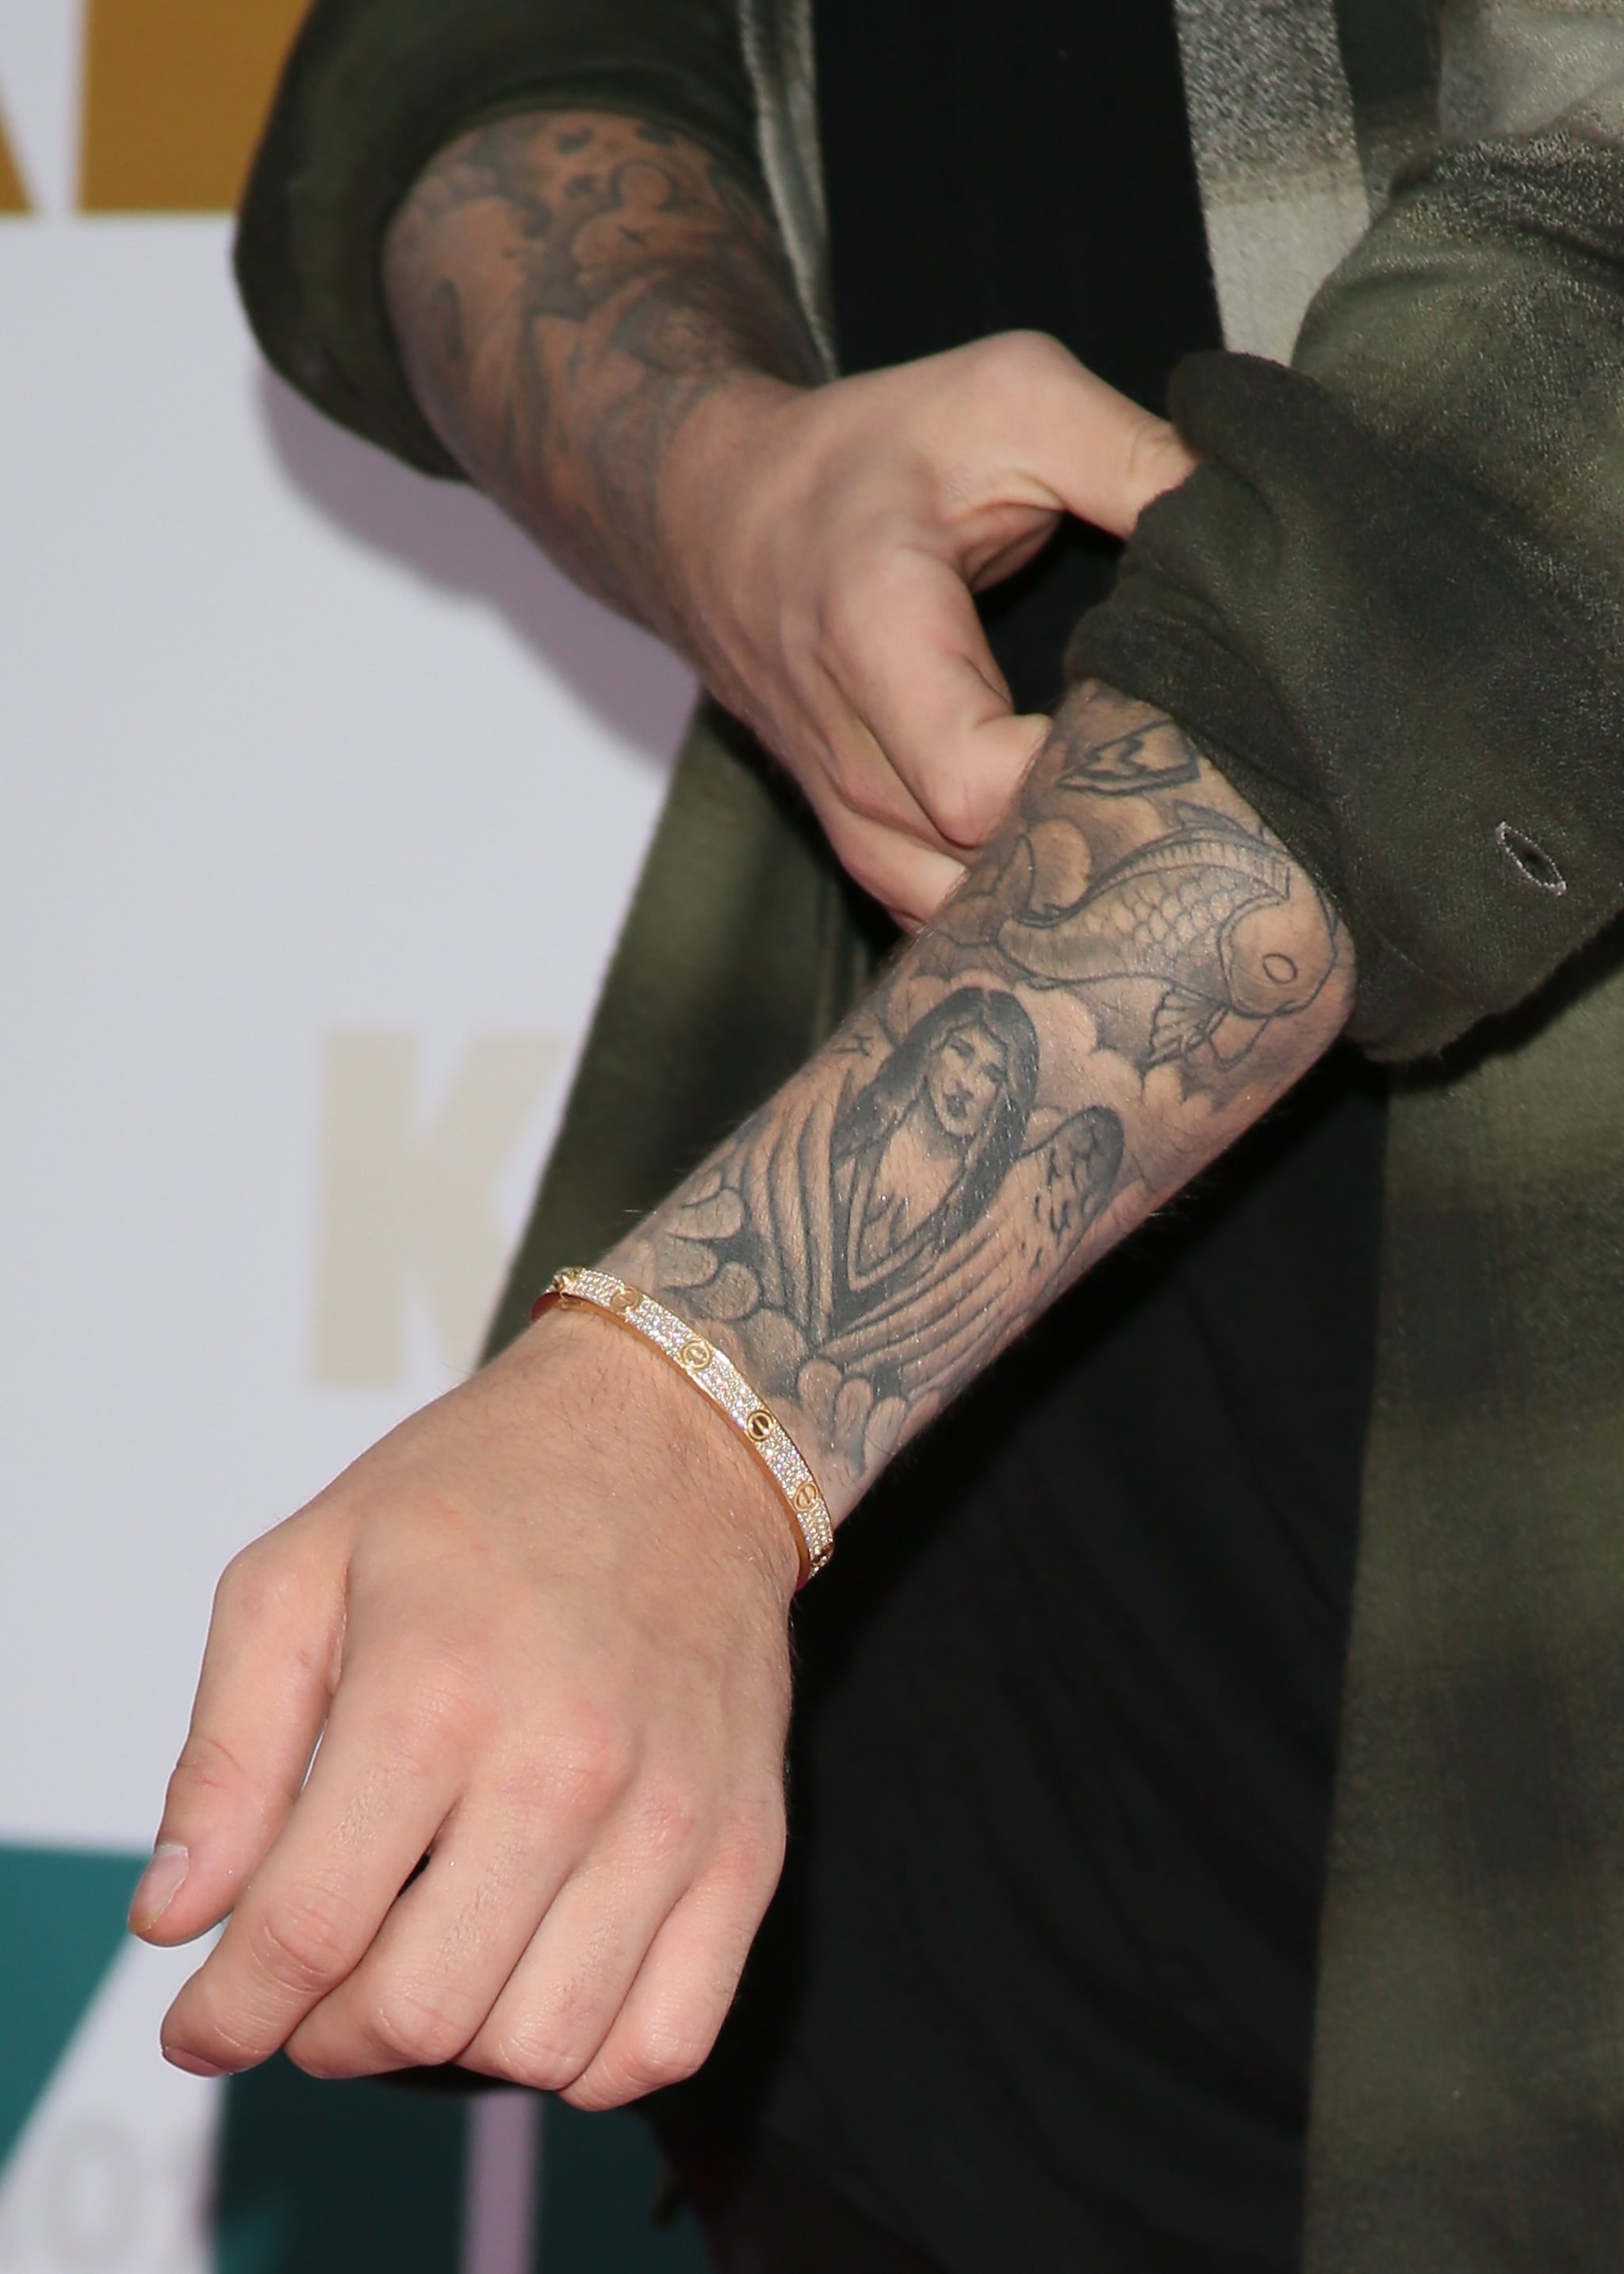 Justin Bieber latest Tattoo resembles Selena Gomez